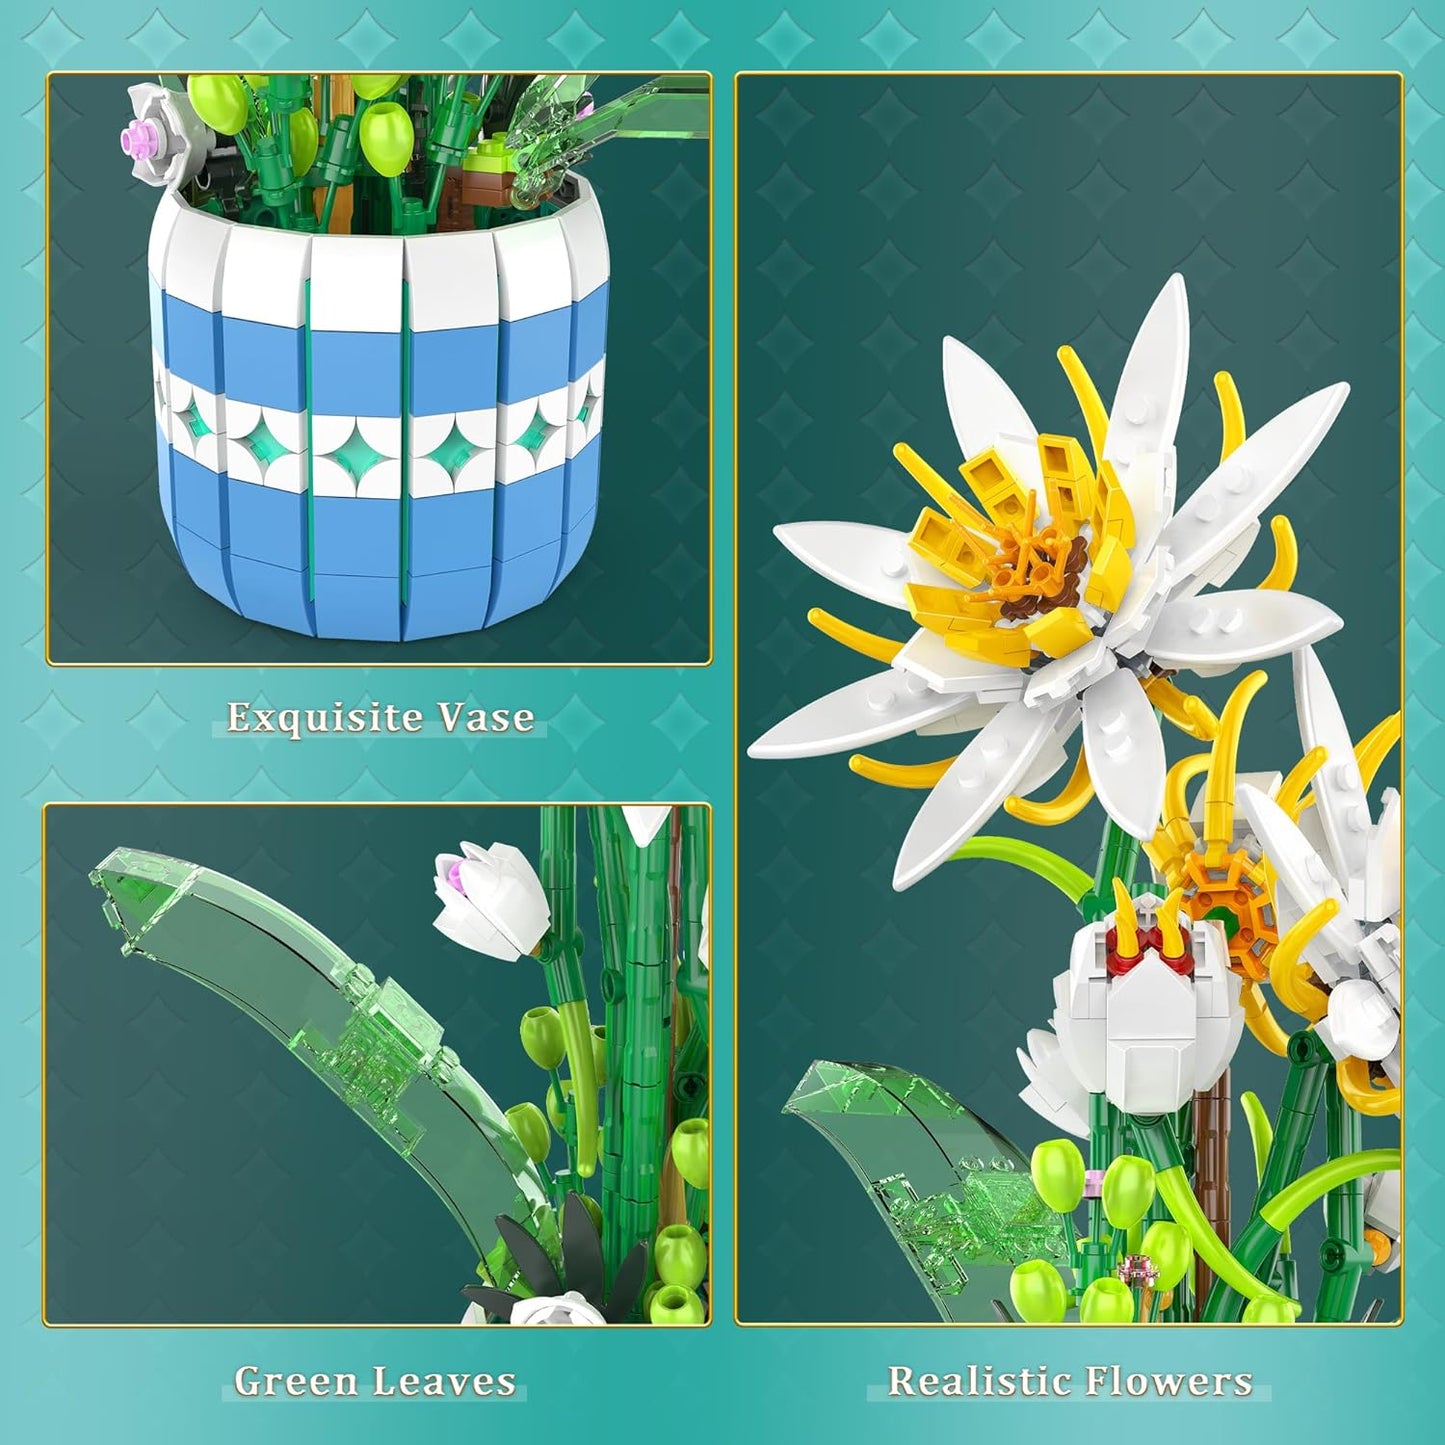 Epiphyllum-Blumenstrauß-Bausatz, Blumen-Bonsai-Bauspielzeug für Erwachsene und Kinder, Geschenkidee zum Valentinstag, Muttertag, Geburtstag, Weihnachten – 835 Teile 